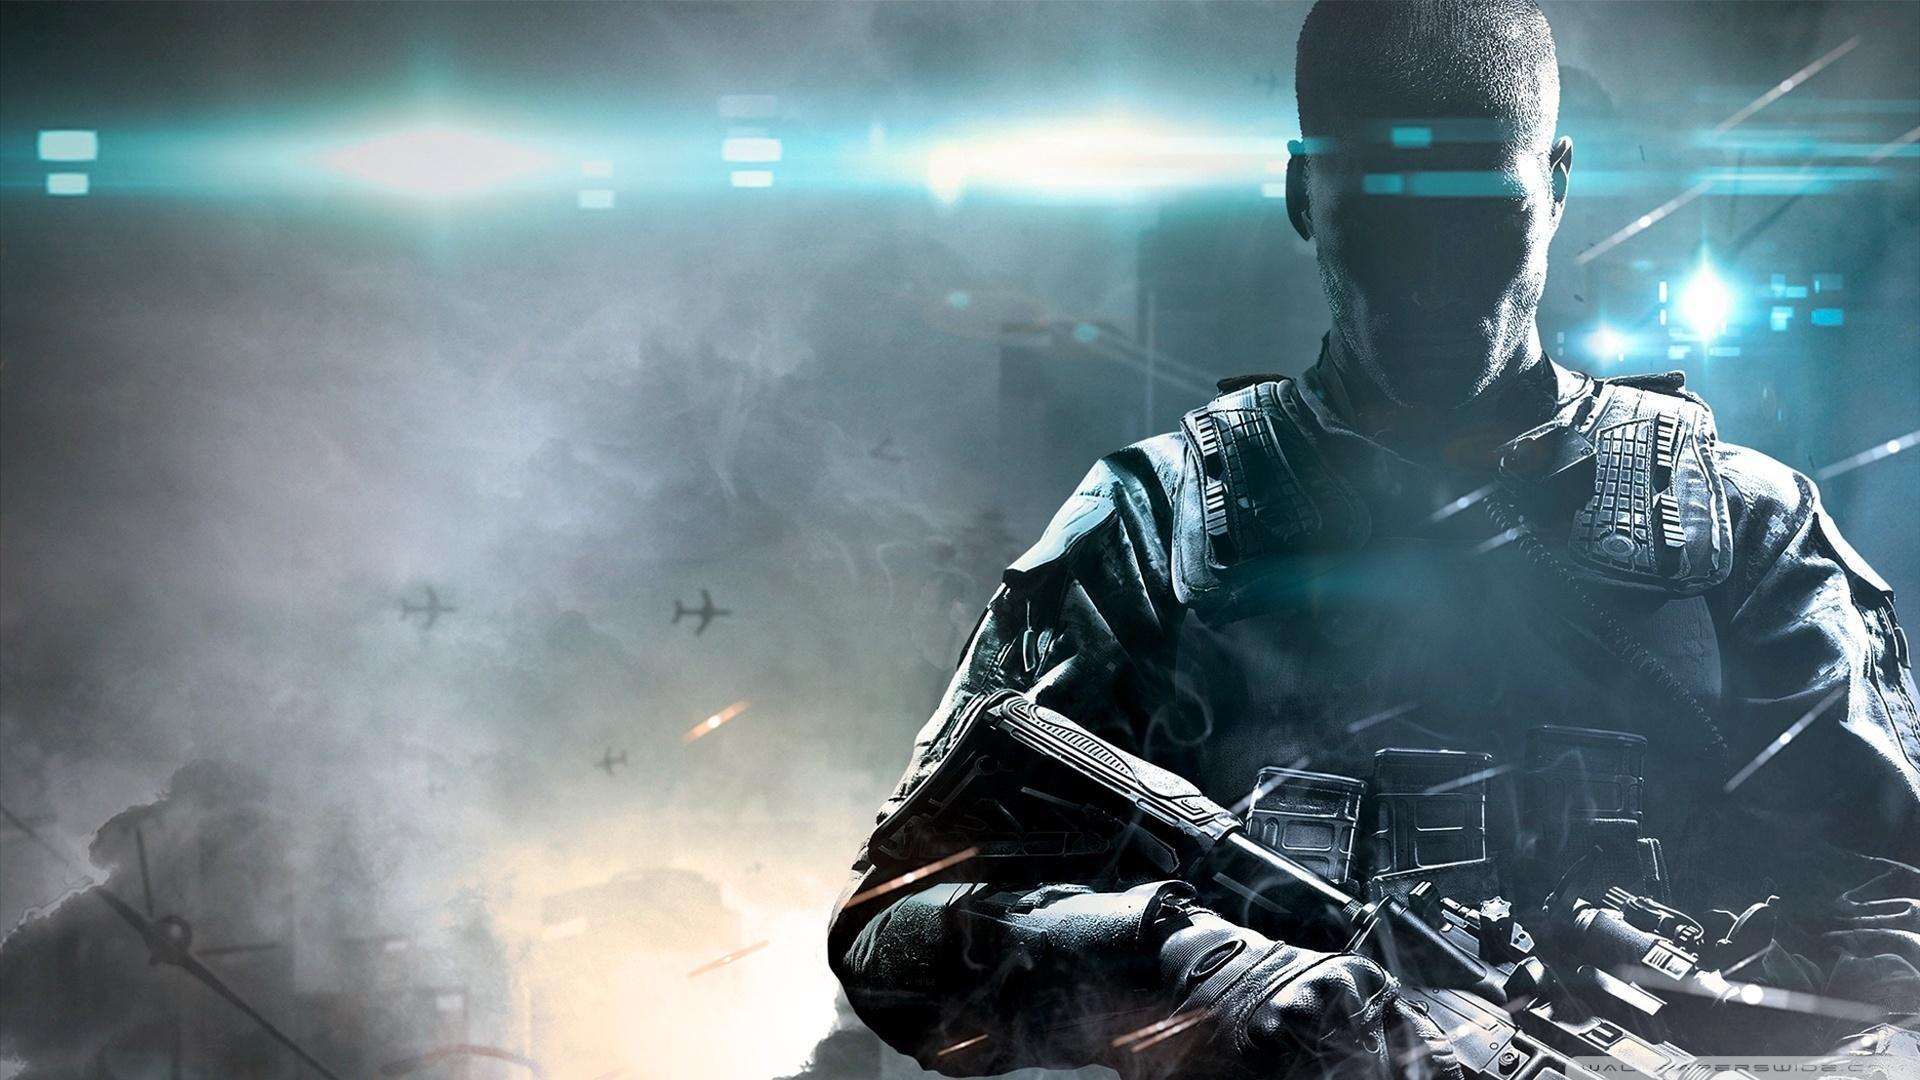 Call of Duty Black Ops 2 HD desktop wallpaper, Widescreen, High